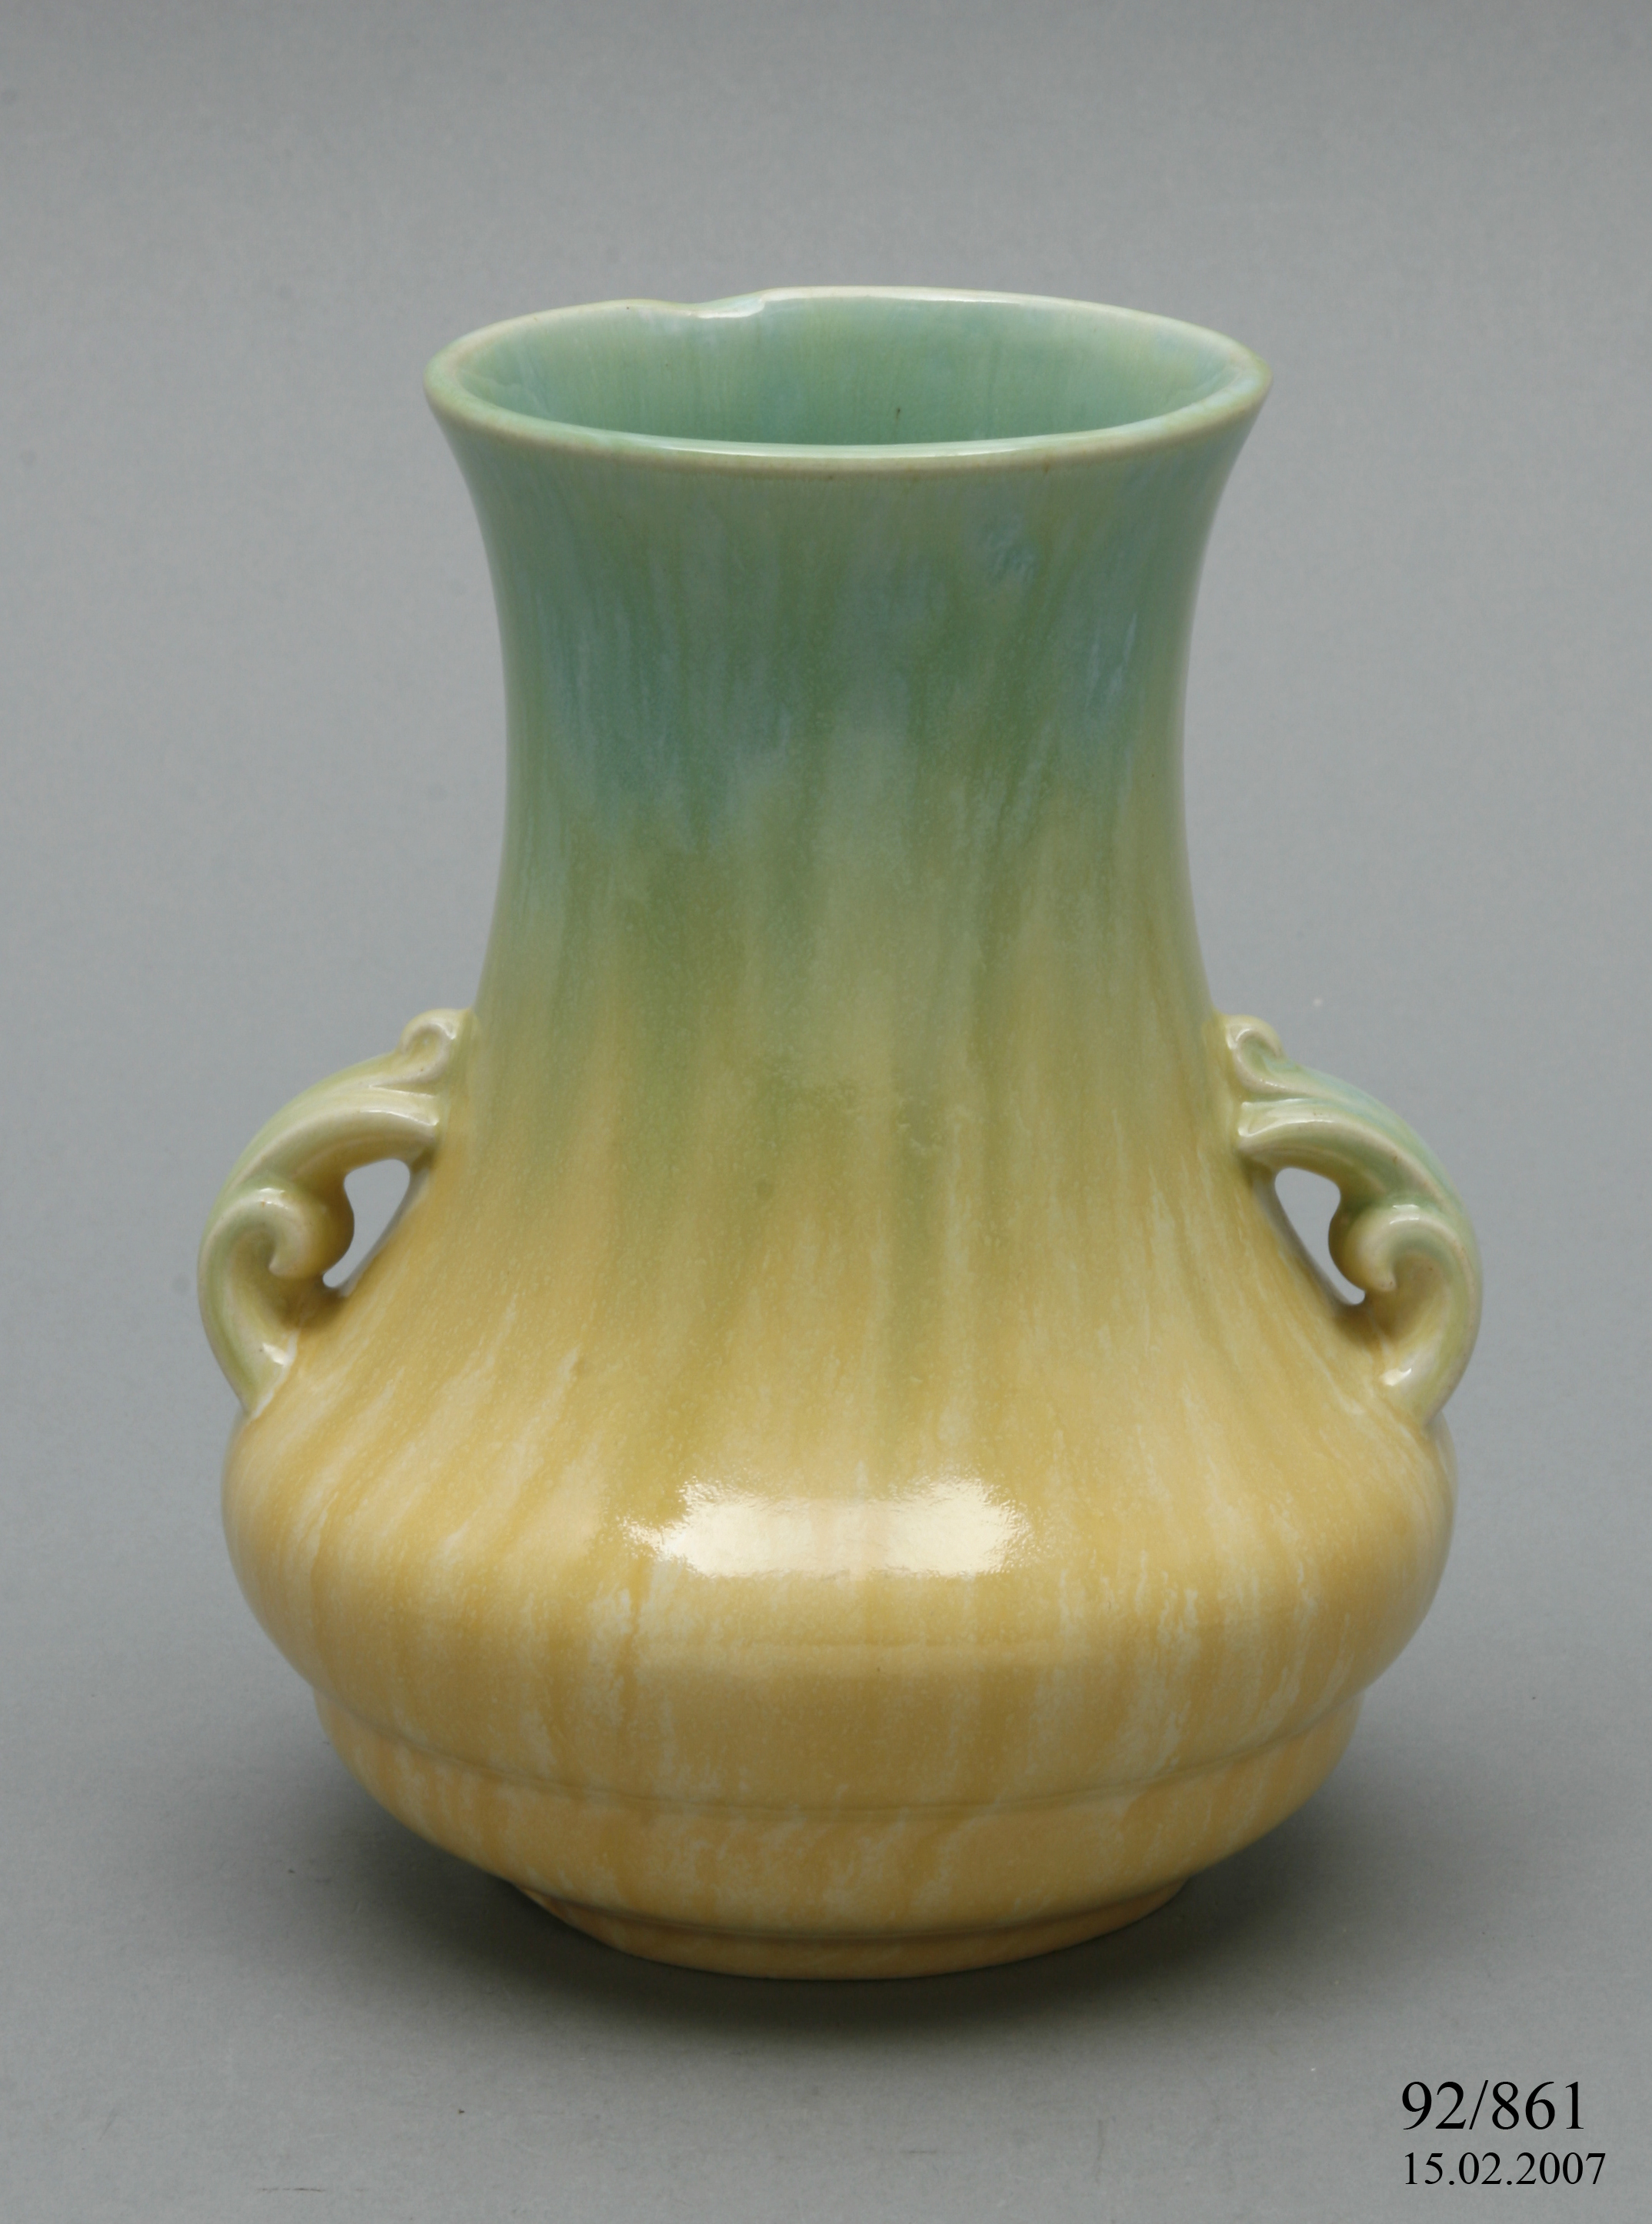 A Pates Potteries slip cast vase.